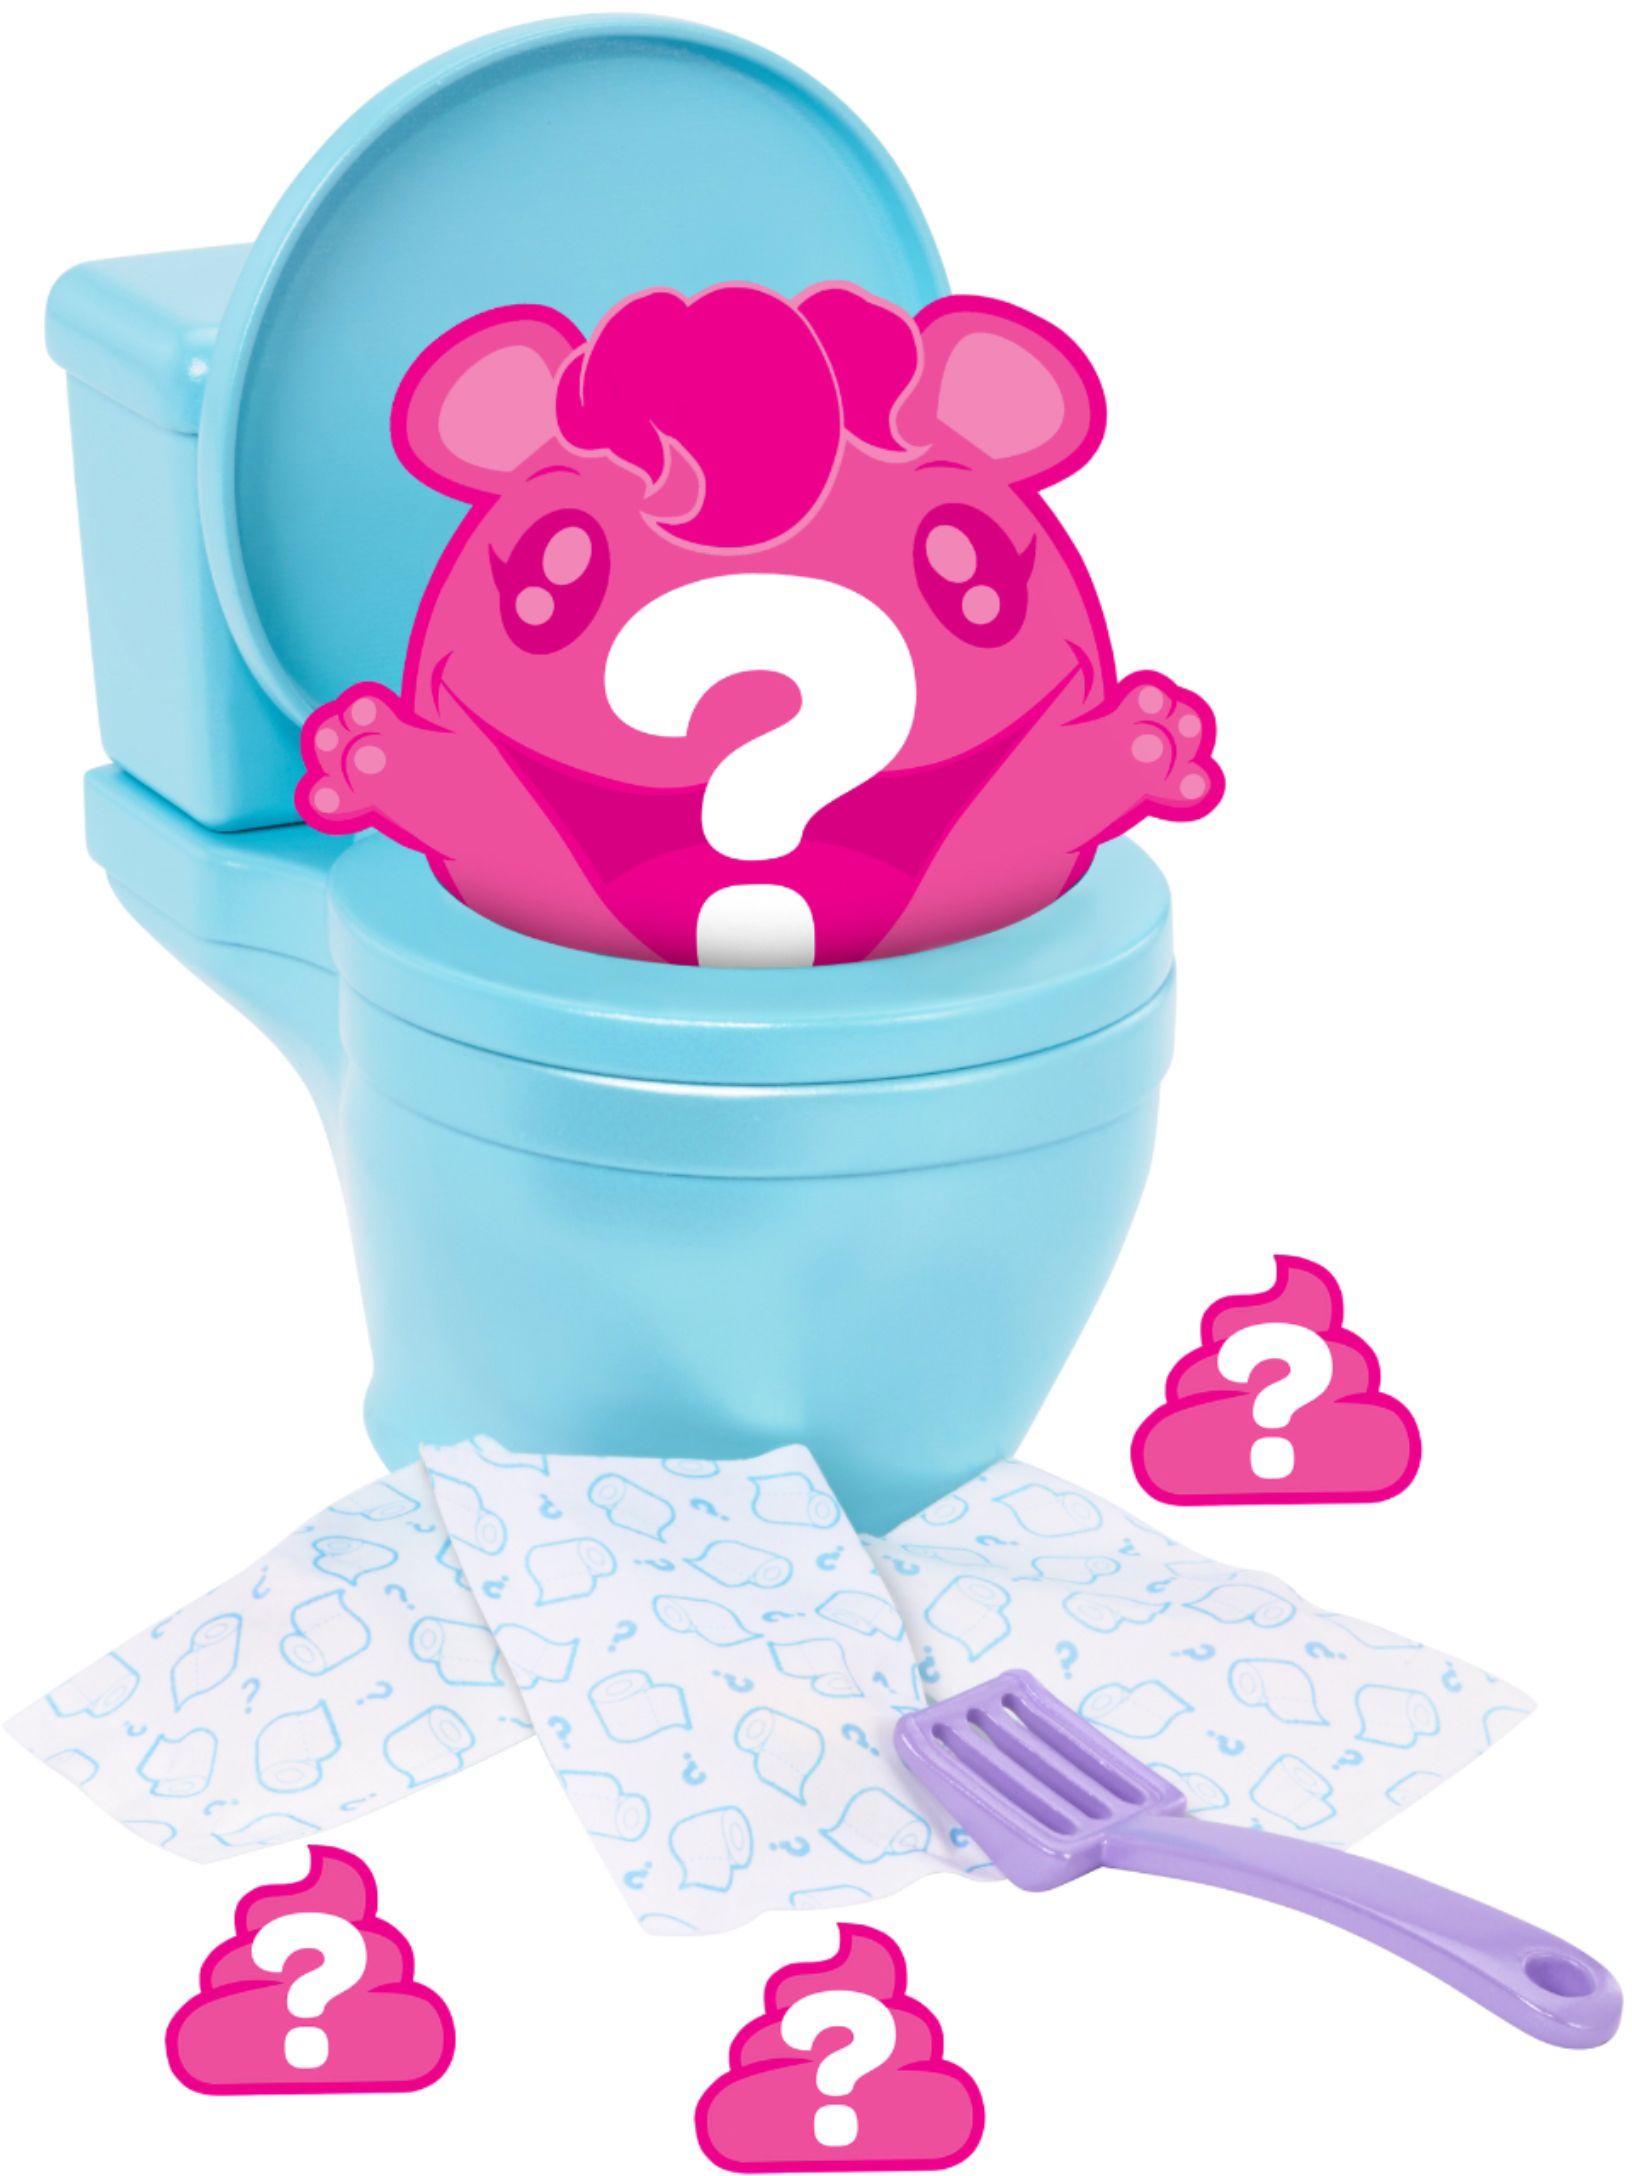 POOPAROOS Pooping Pink Pet /& Accessories New